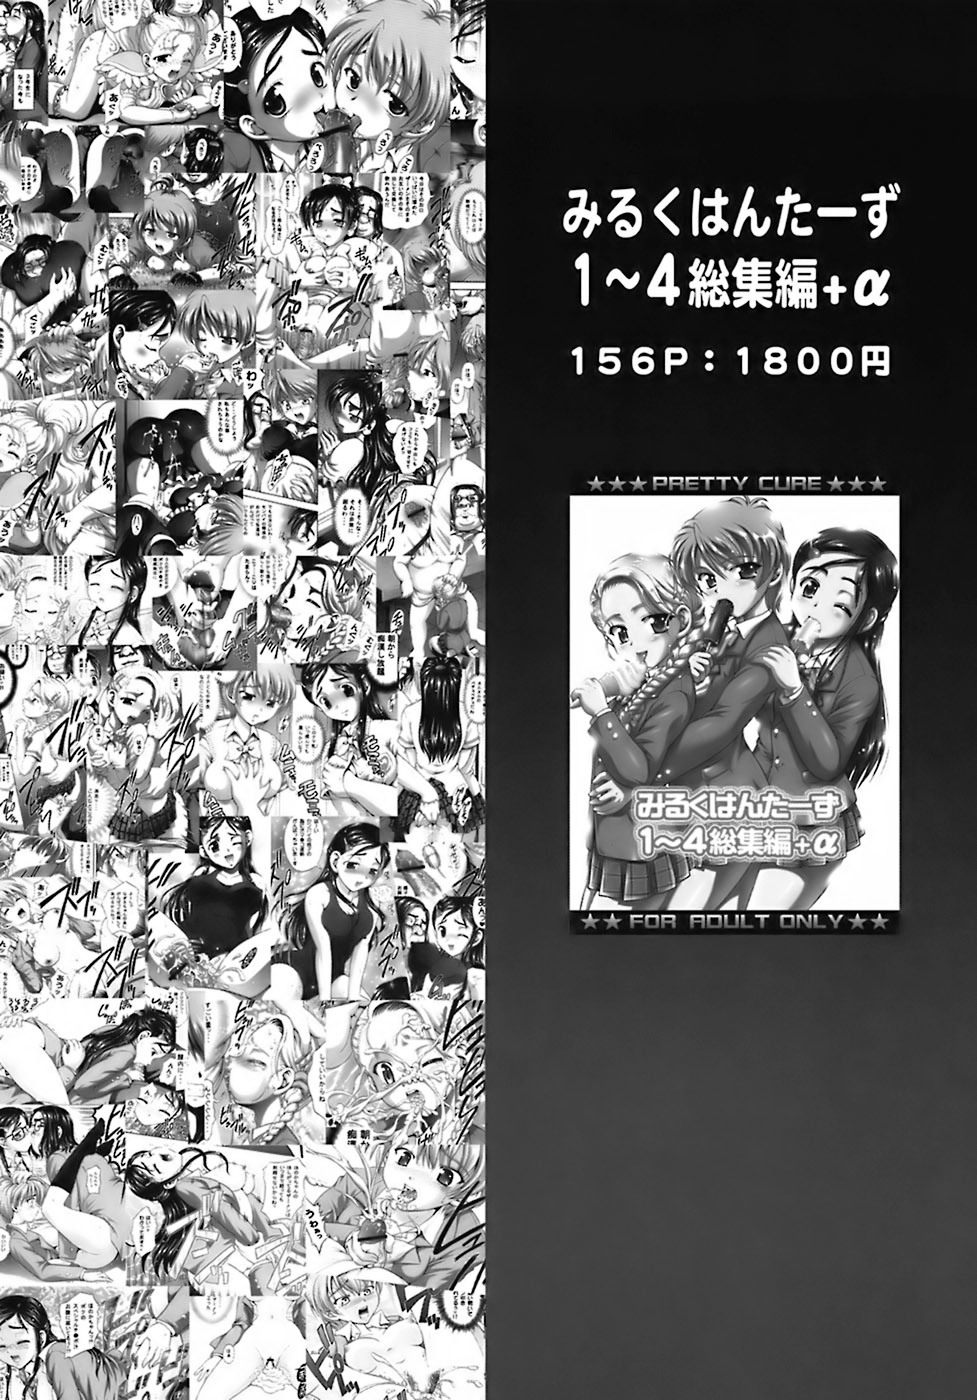 Milk Hunters 6 futari wa pretty cure 44 hentai manga